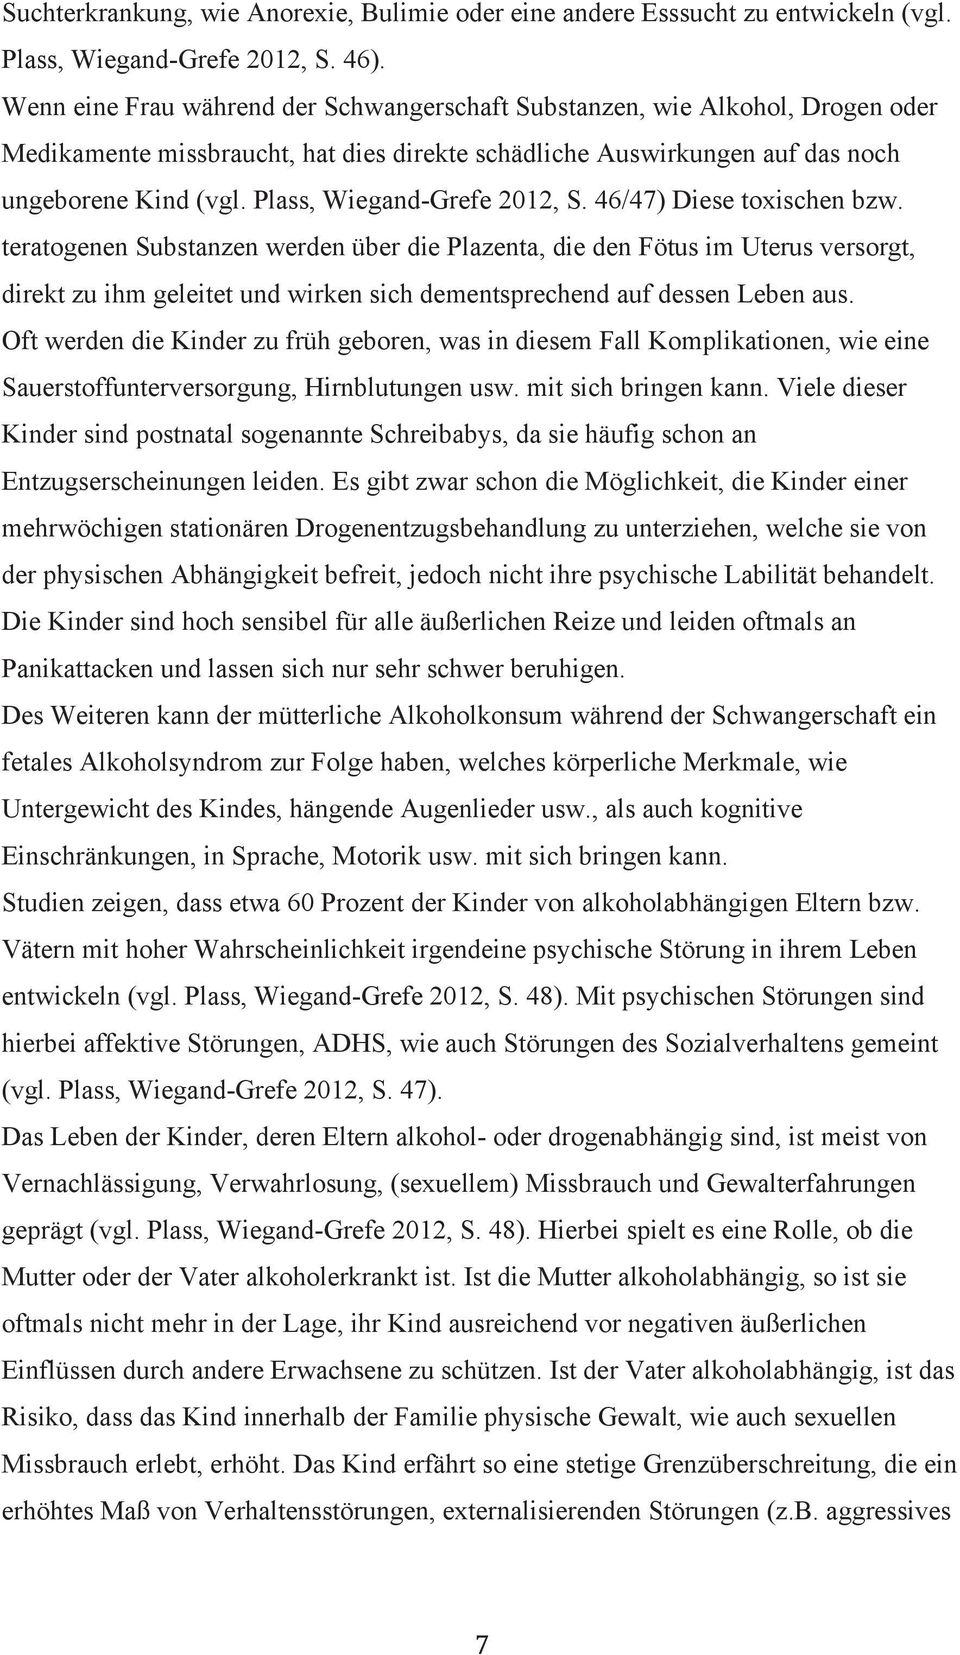 Plass, Wiegand-Grefe 2012, S. 46/47) Diese toxischen bzw.